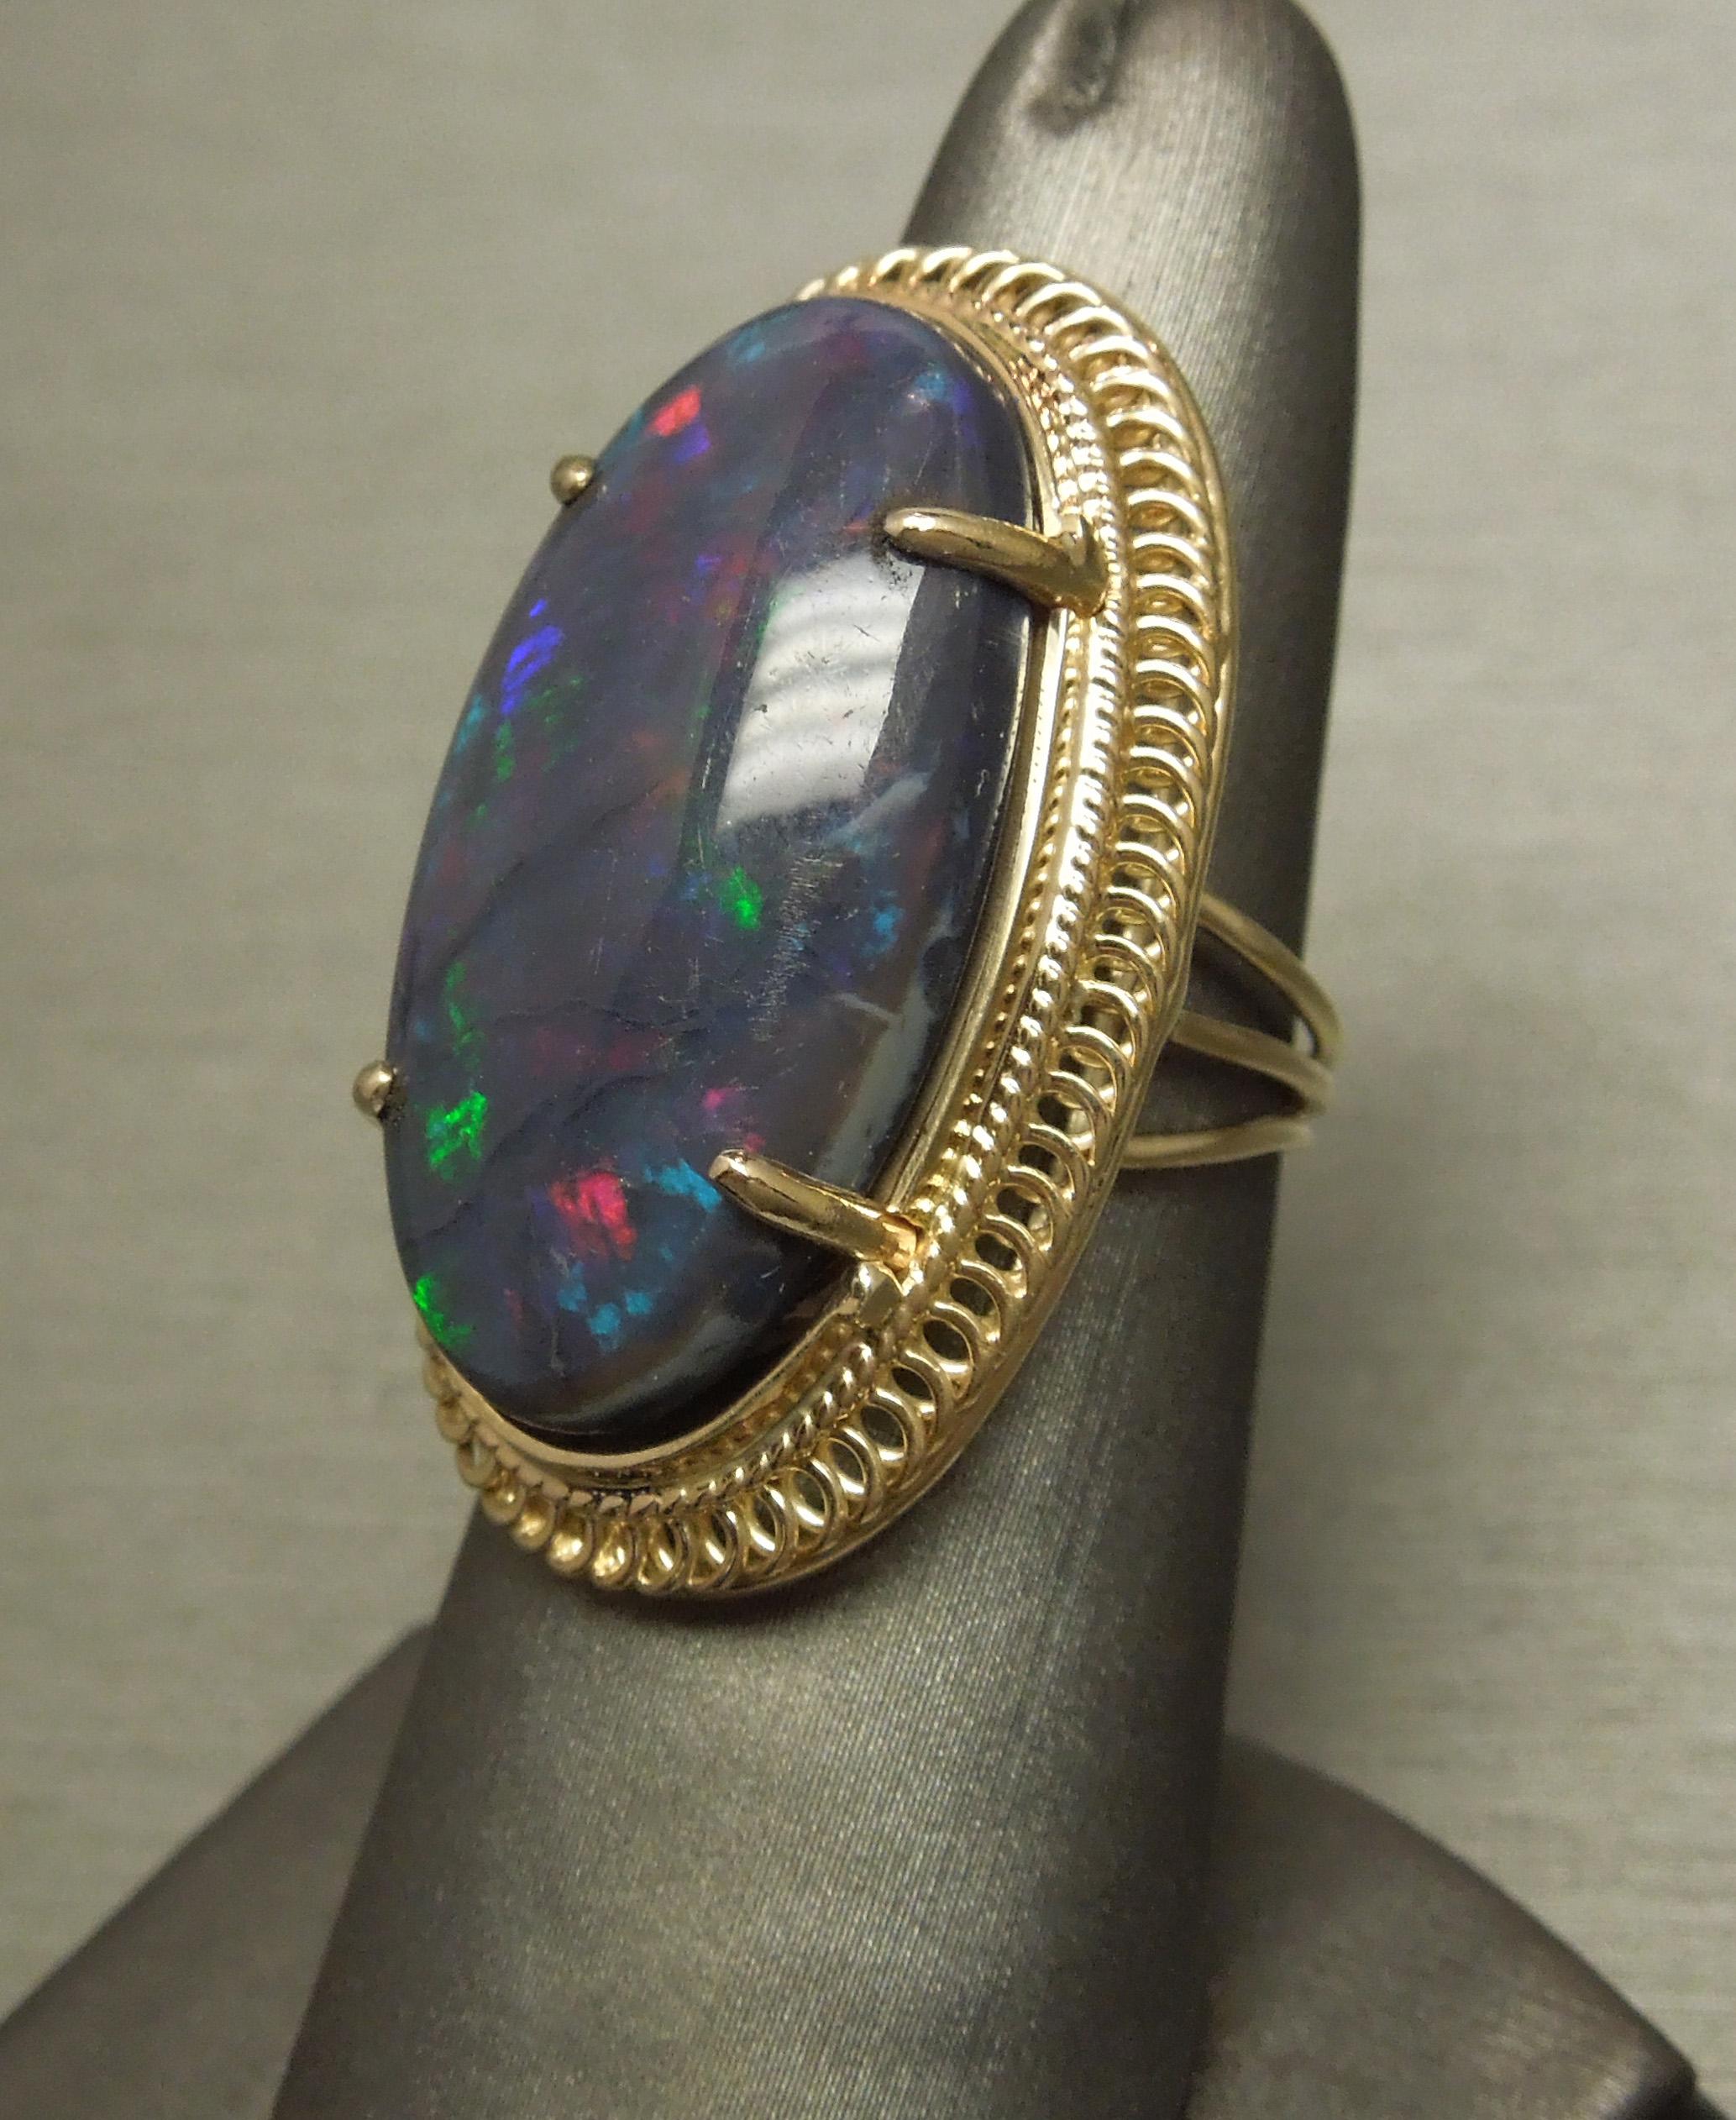 Cette bague solitaire en opale opulente présente une opale noire de 19,15 carats certifiée par le GIA, qui possède toutes les caractéristiques d'une opale prisée par un collectionneur d'opales ! Avec une dispersion symétrique et équilibrée des